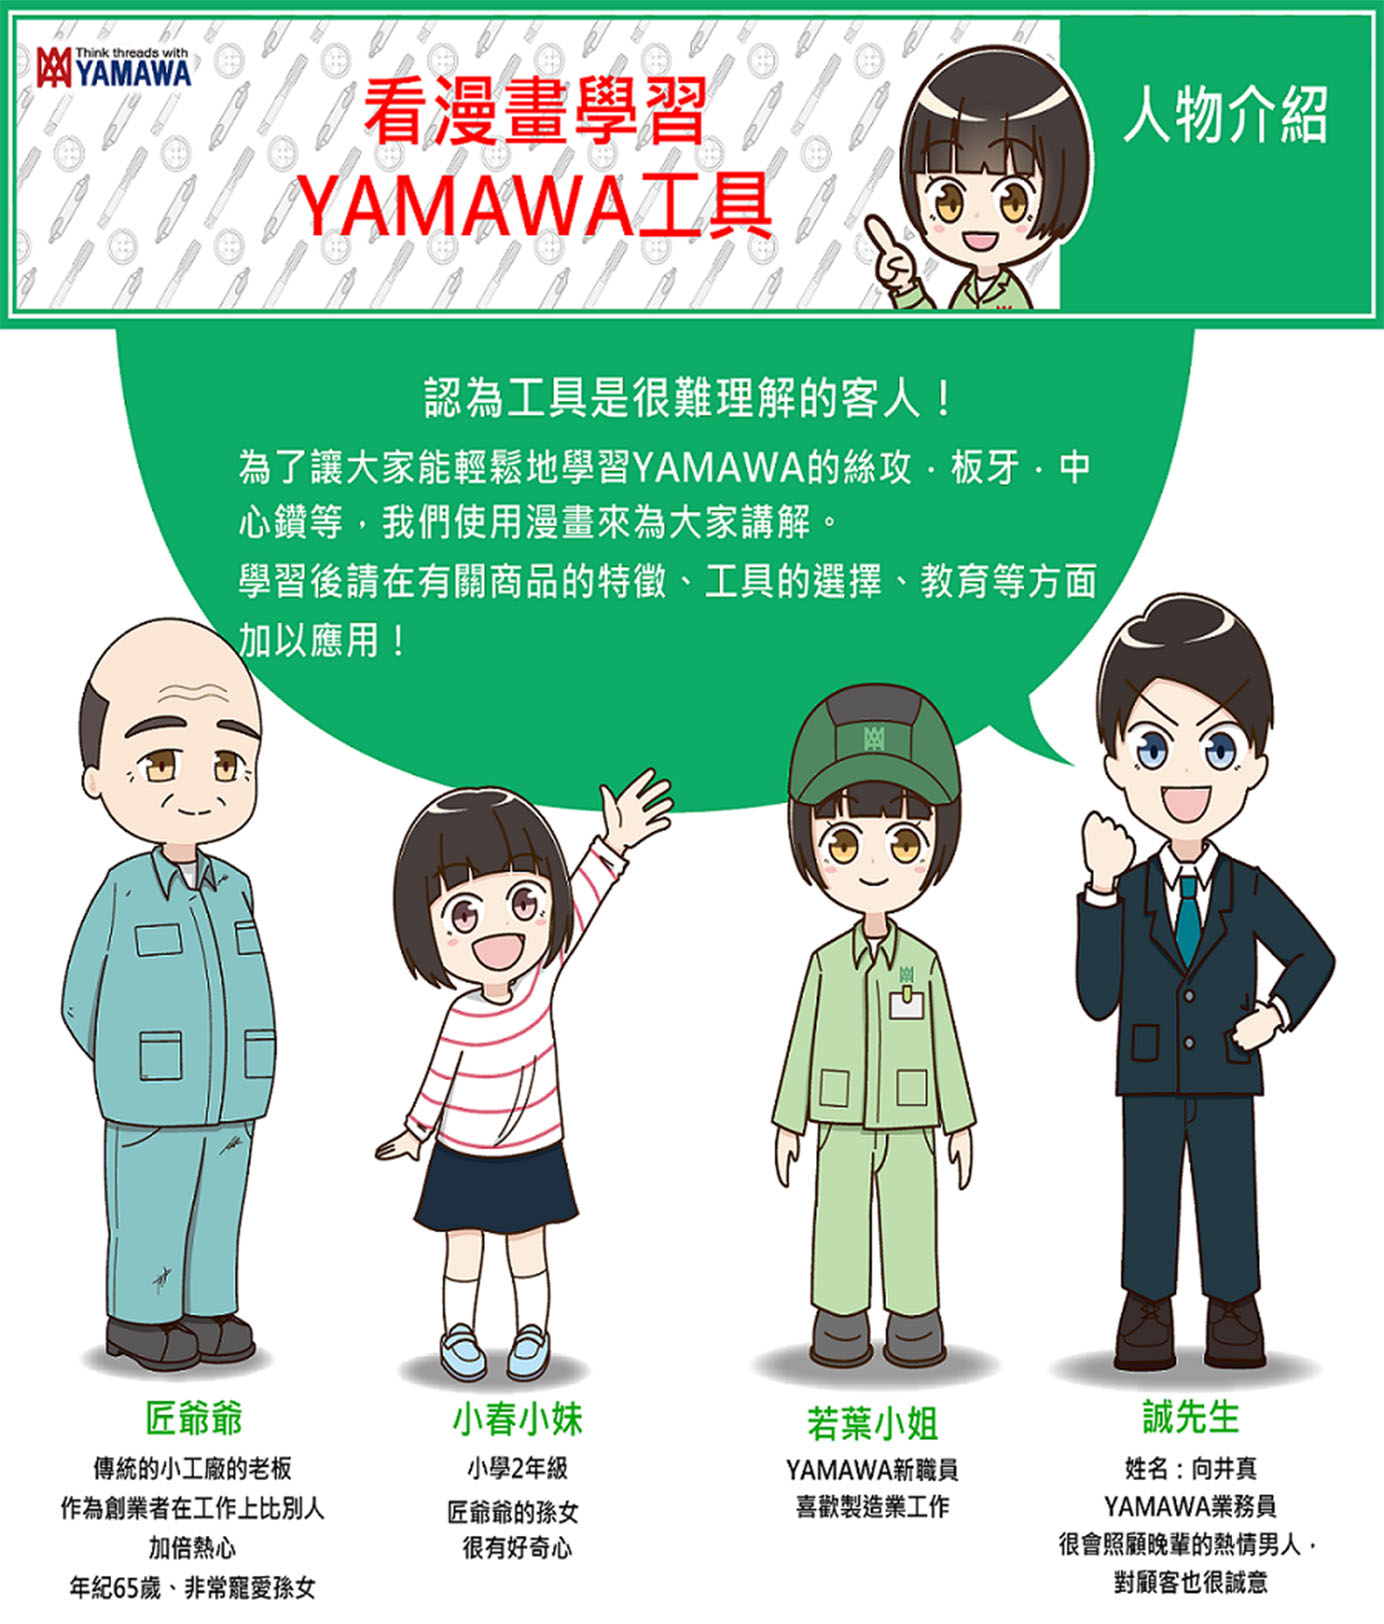 yamawa-detail-pic.jpg